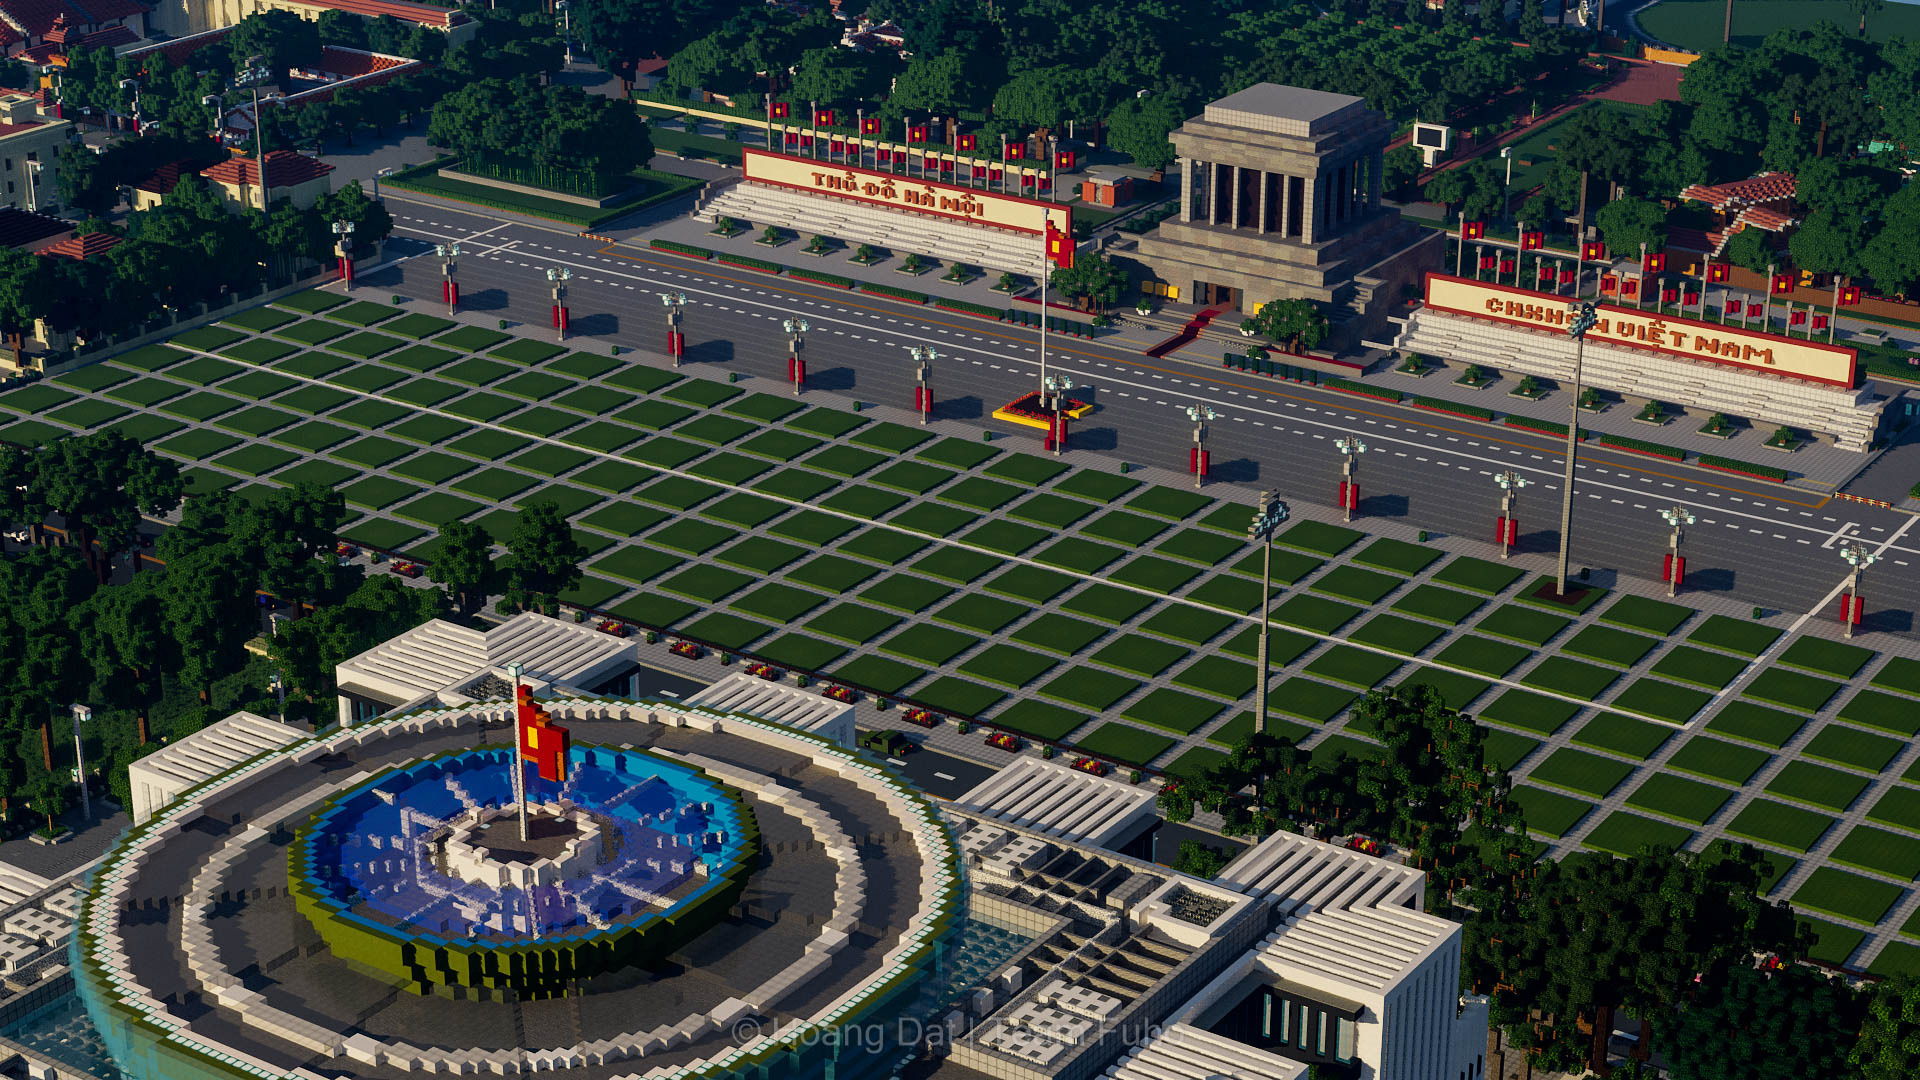 <p>TFH &#8211; Quảng trường Ba Đình là quảng trường lớn nhất Việt Nam, đó là hồn thiên của dân tộc Việt Nam và cũng là nơi mà Chủ tịch Hồ Chí Minh đã đọc bản Tuyên ngôn Độc lập khai sinh ra nước Việt Nam Dân chủ Cộng hòa. Nhưng thật khó mà hình dung [&hellip;]</p>
